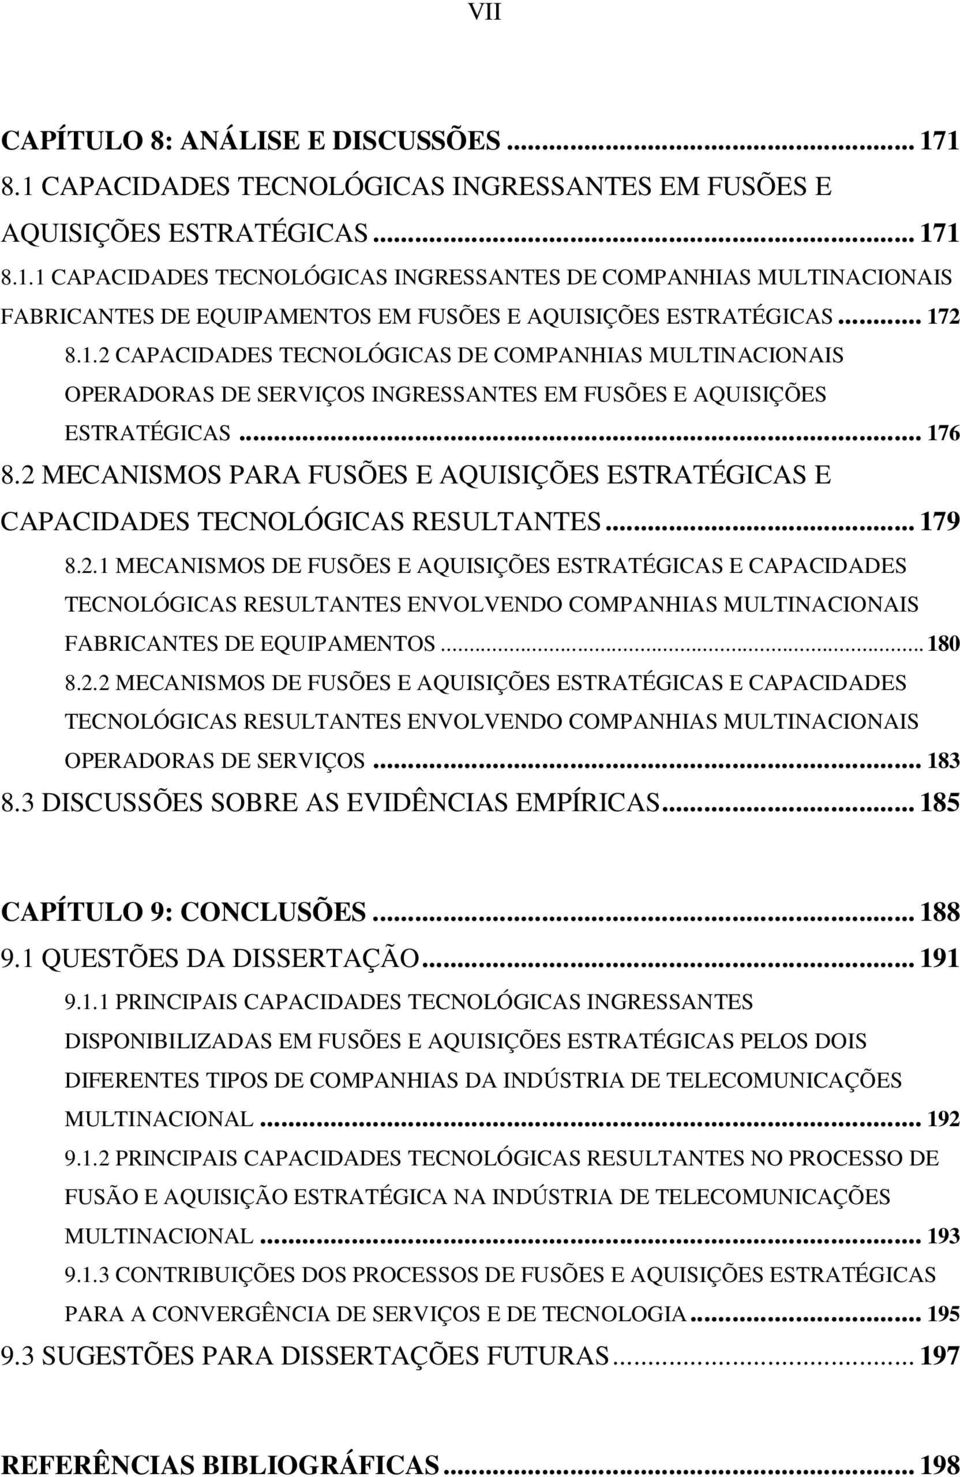 2 MECANISMOS PARA FUSÕES E AQUISIÇÕES ESTRATÉGICAS E CAPACIDADES TECNOLÓGICAS RESULTANTES... 179 8.2.1 MECANISMOS DE FUSÕES E AQUISIÇÕES ESTRATÉGICAS E CAPACIDADES TECNOLÓGICAS RESULTANTES ENVOLVENDO COMPANHIAS MULTINACIONAIS FABRICANTES DE EQUIPAMENTOS.